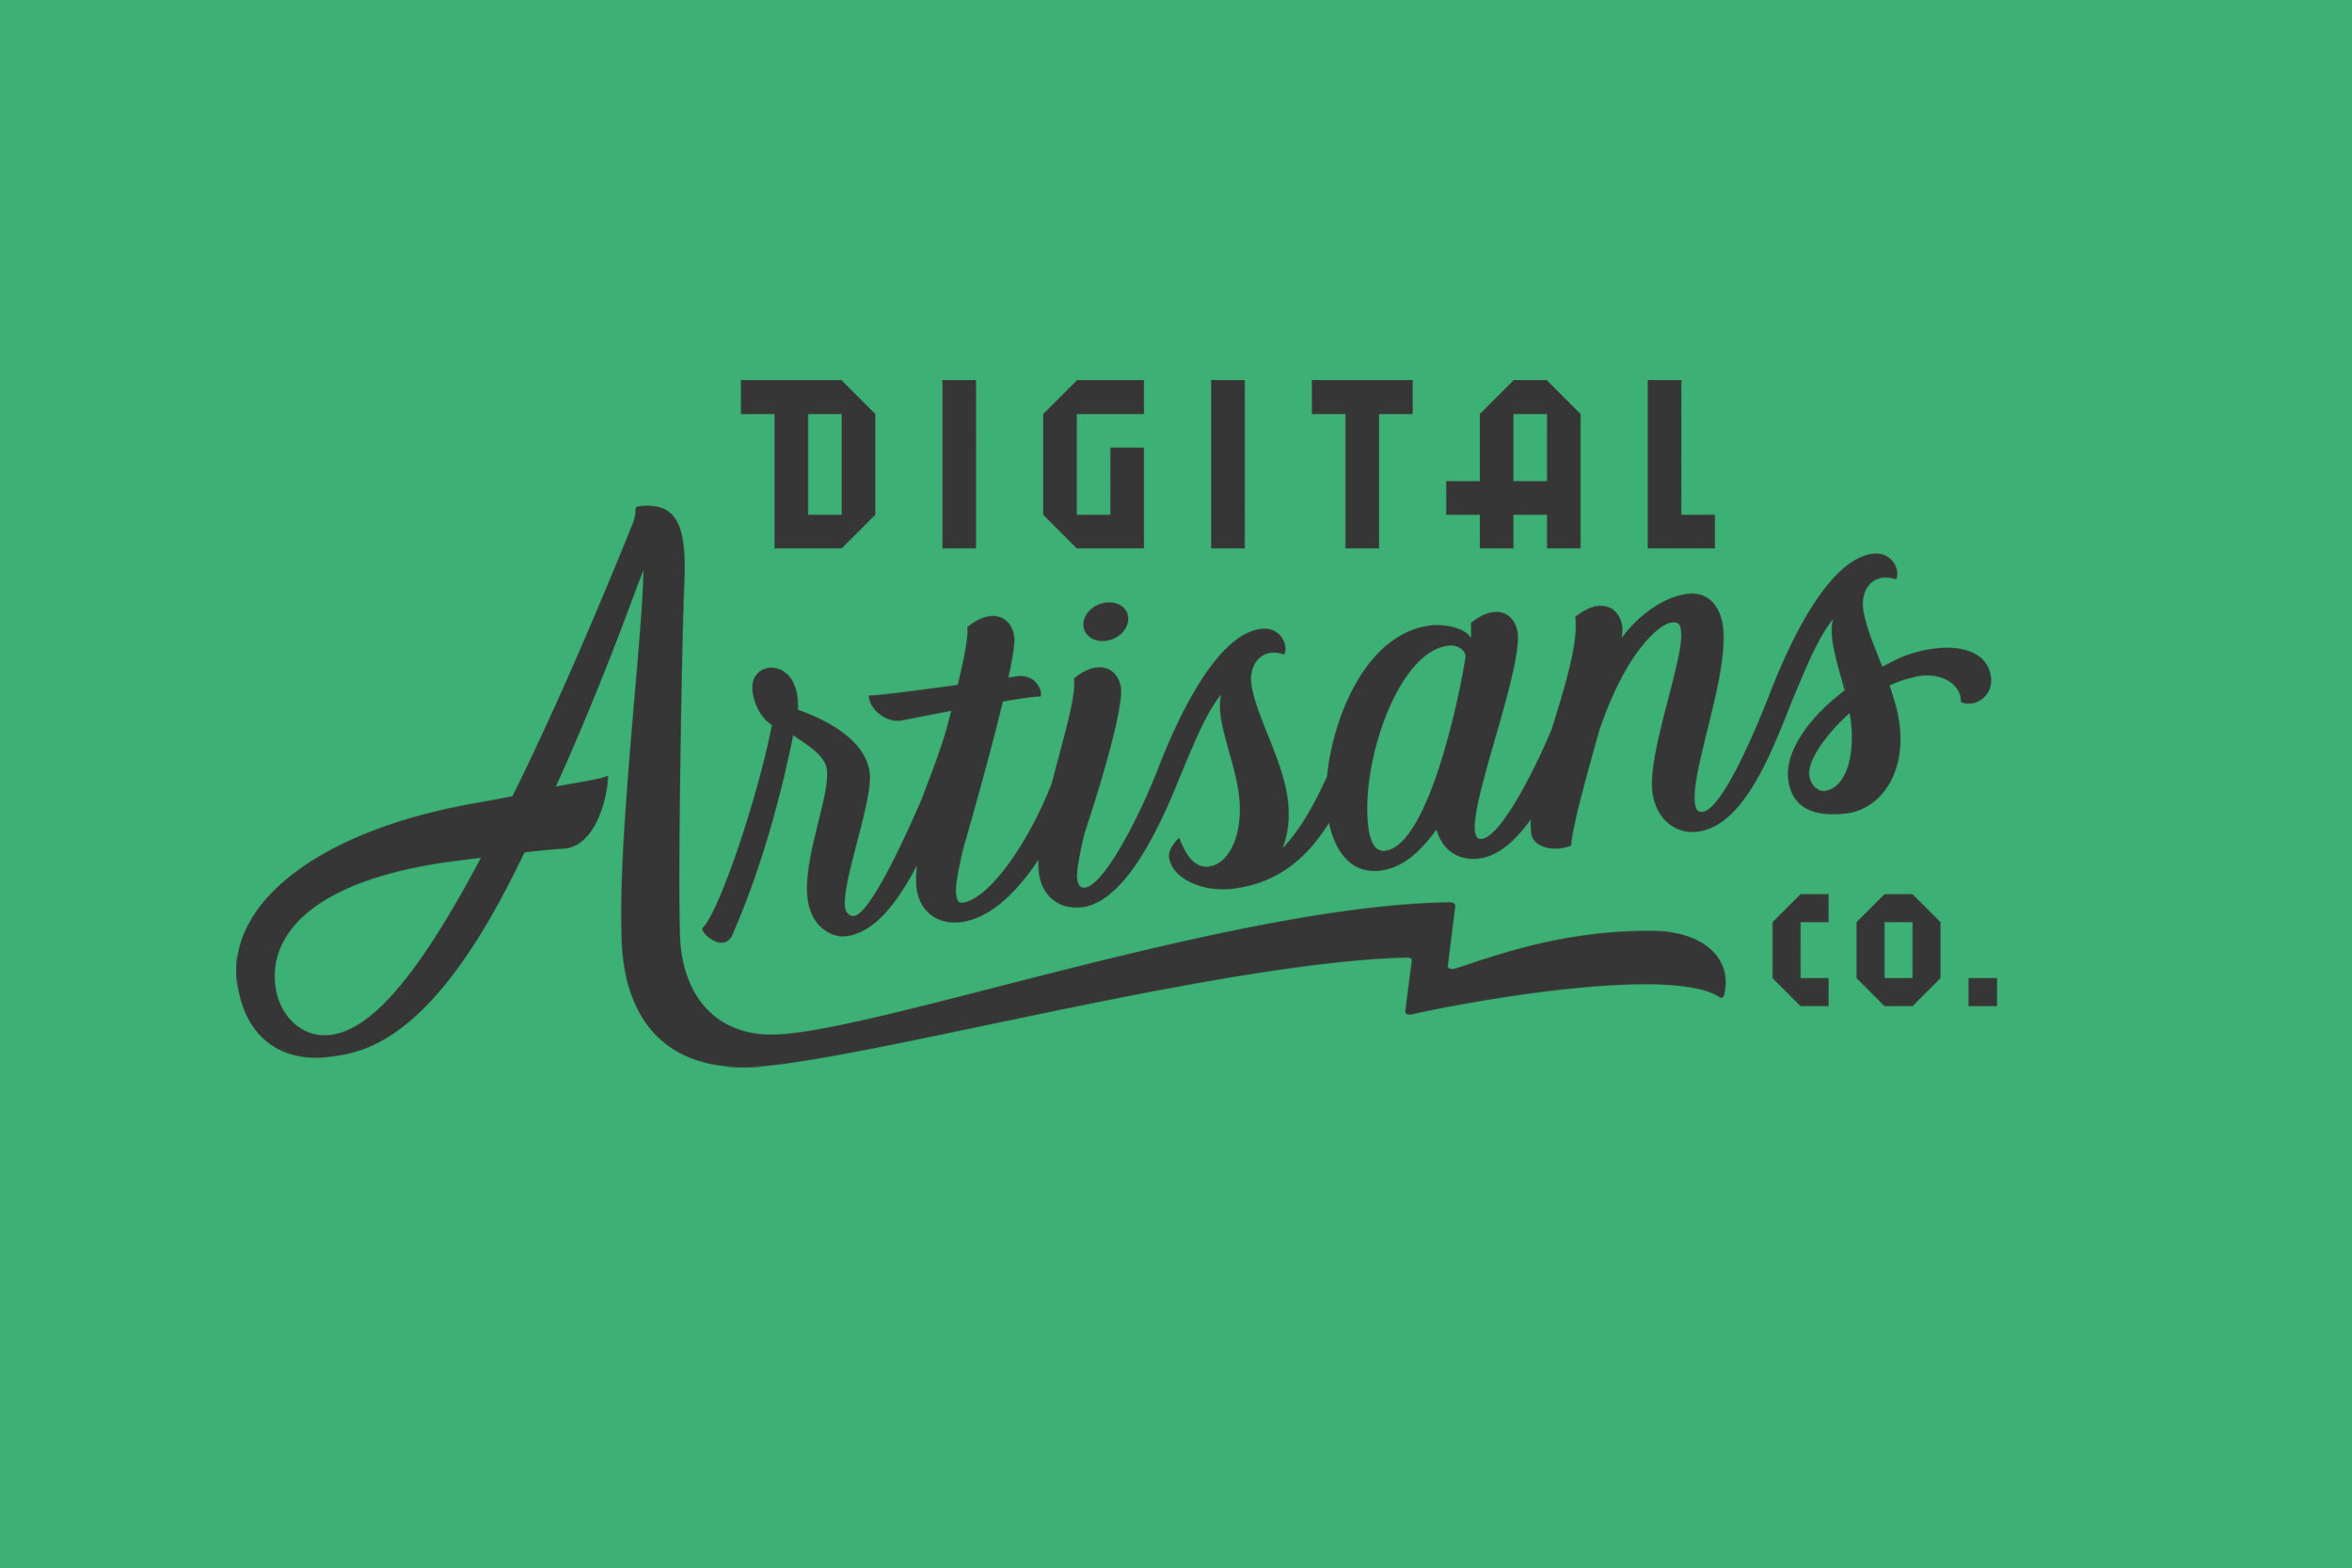 Logo_DigitalArtisans1_Shortlife.jpg